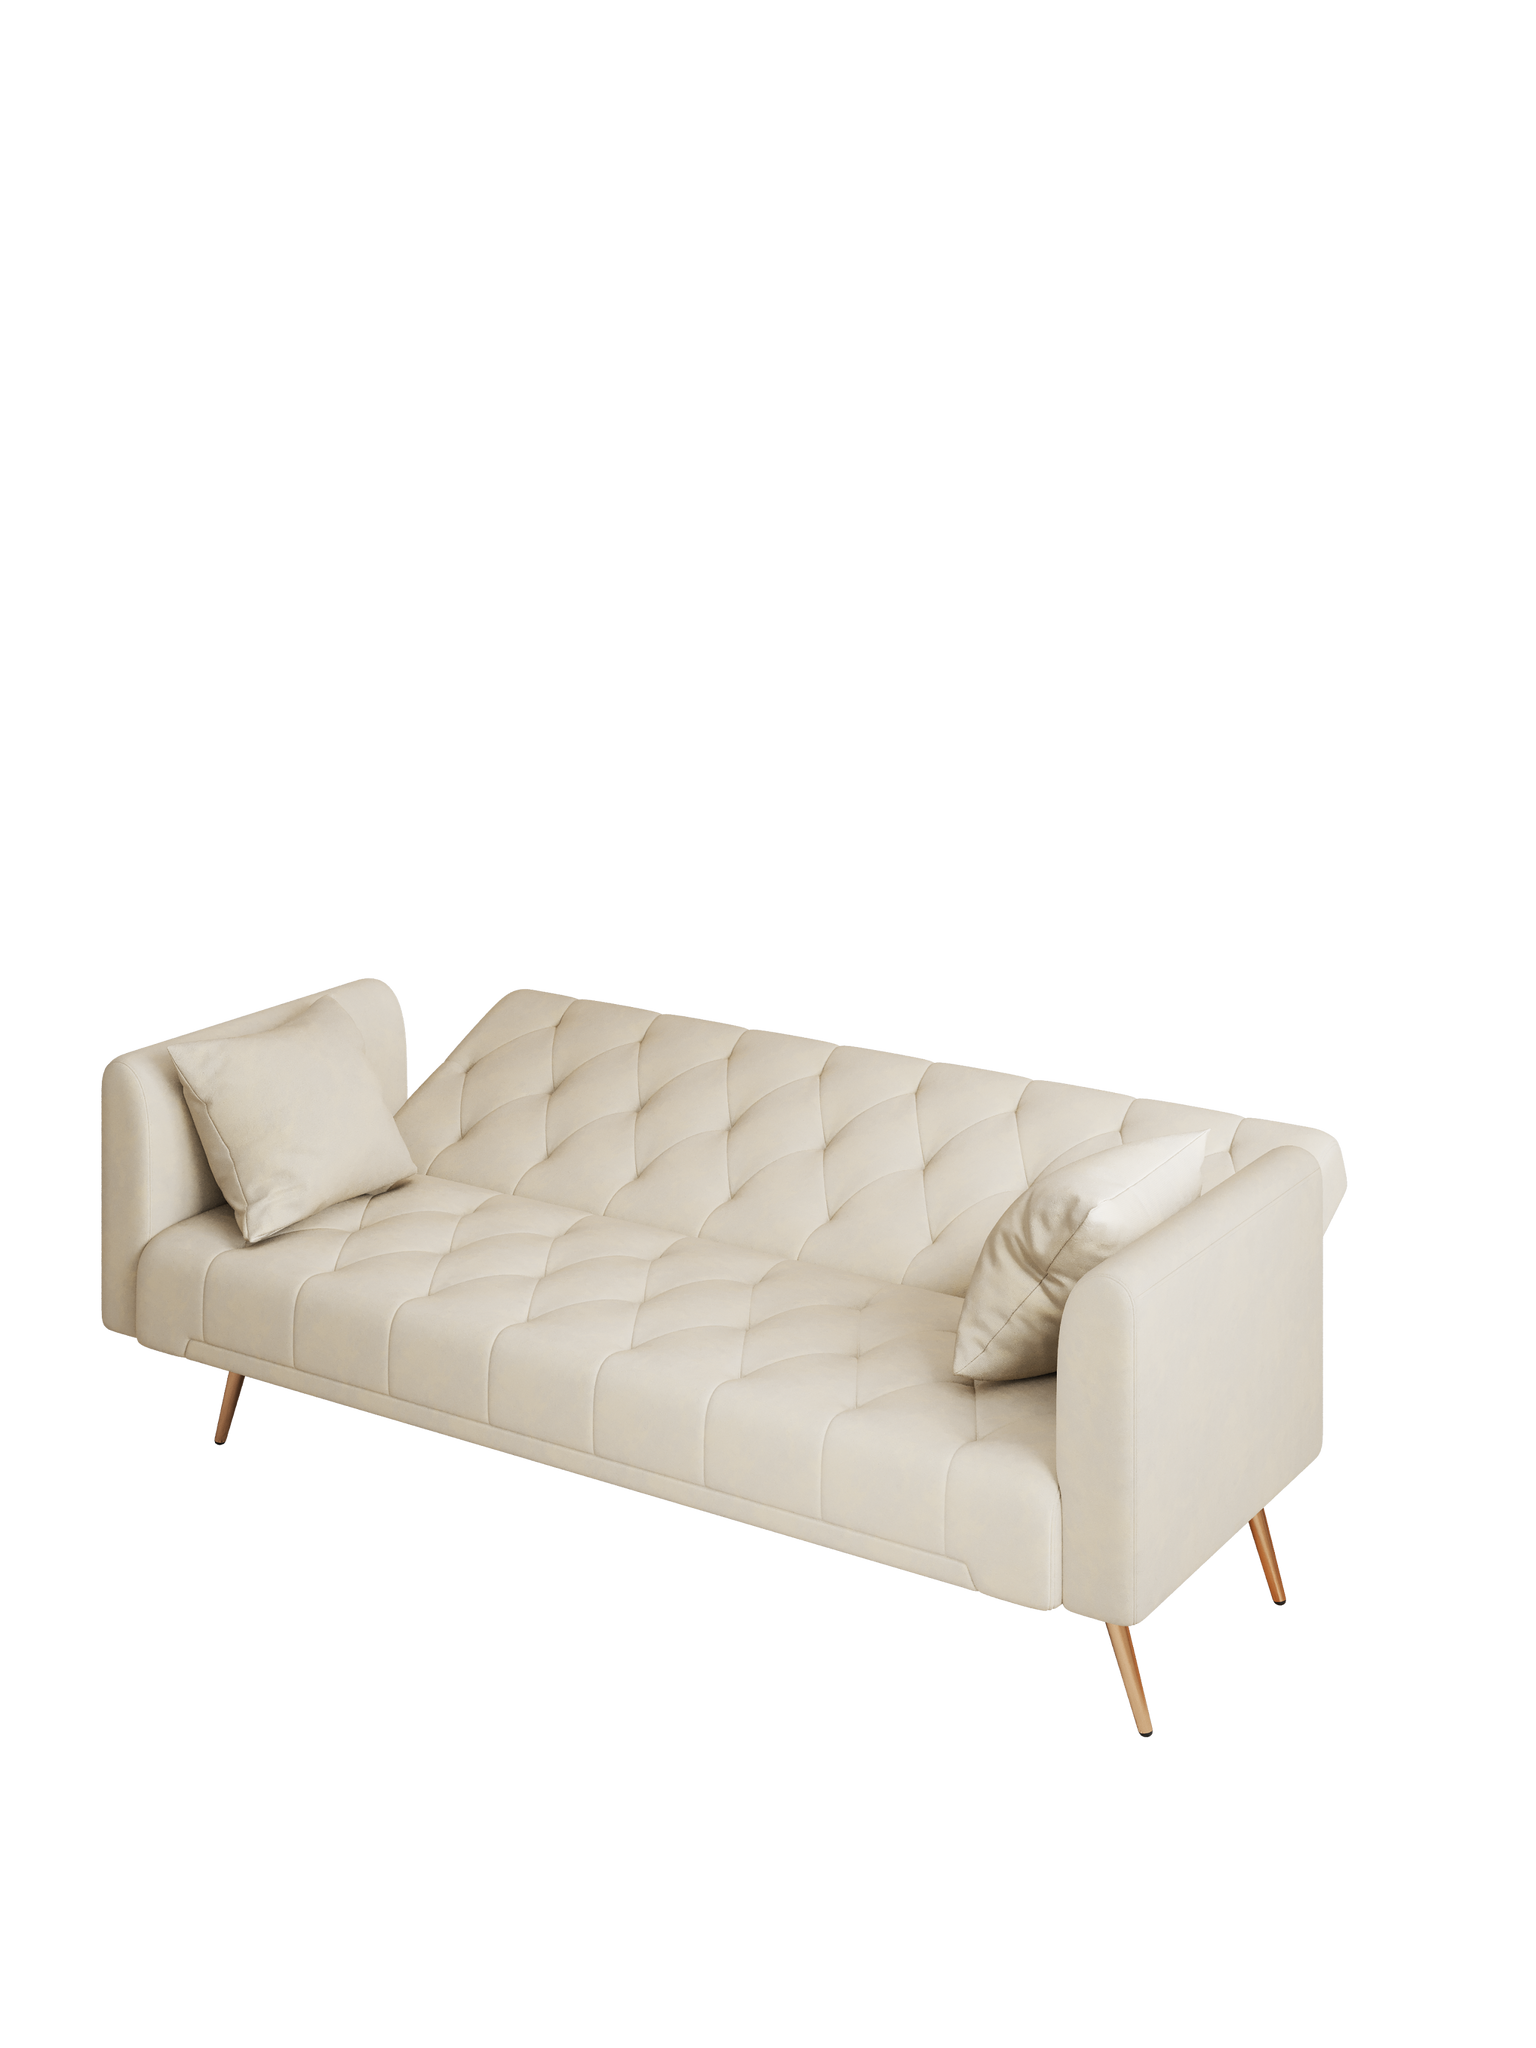 71" Convertible Double Folding Living Room Sofa Bed beige-velvet